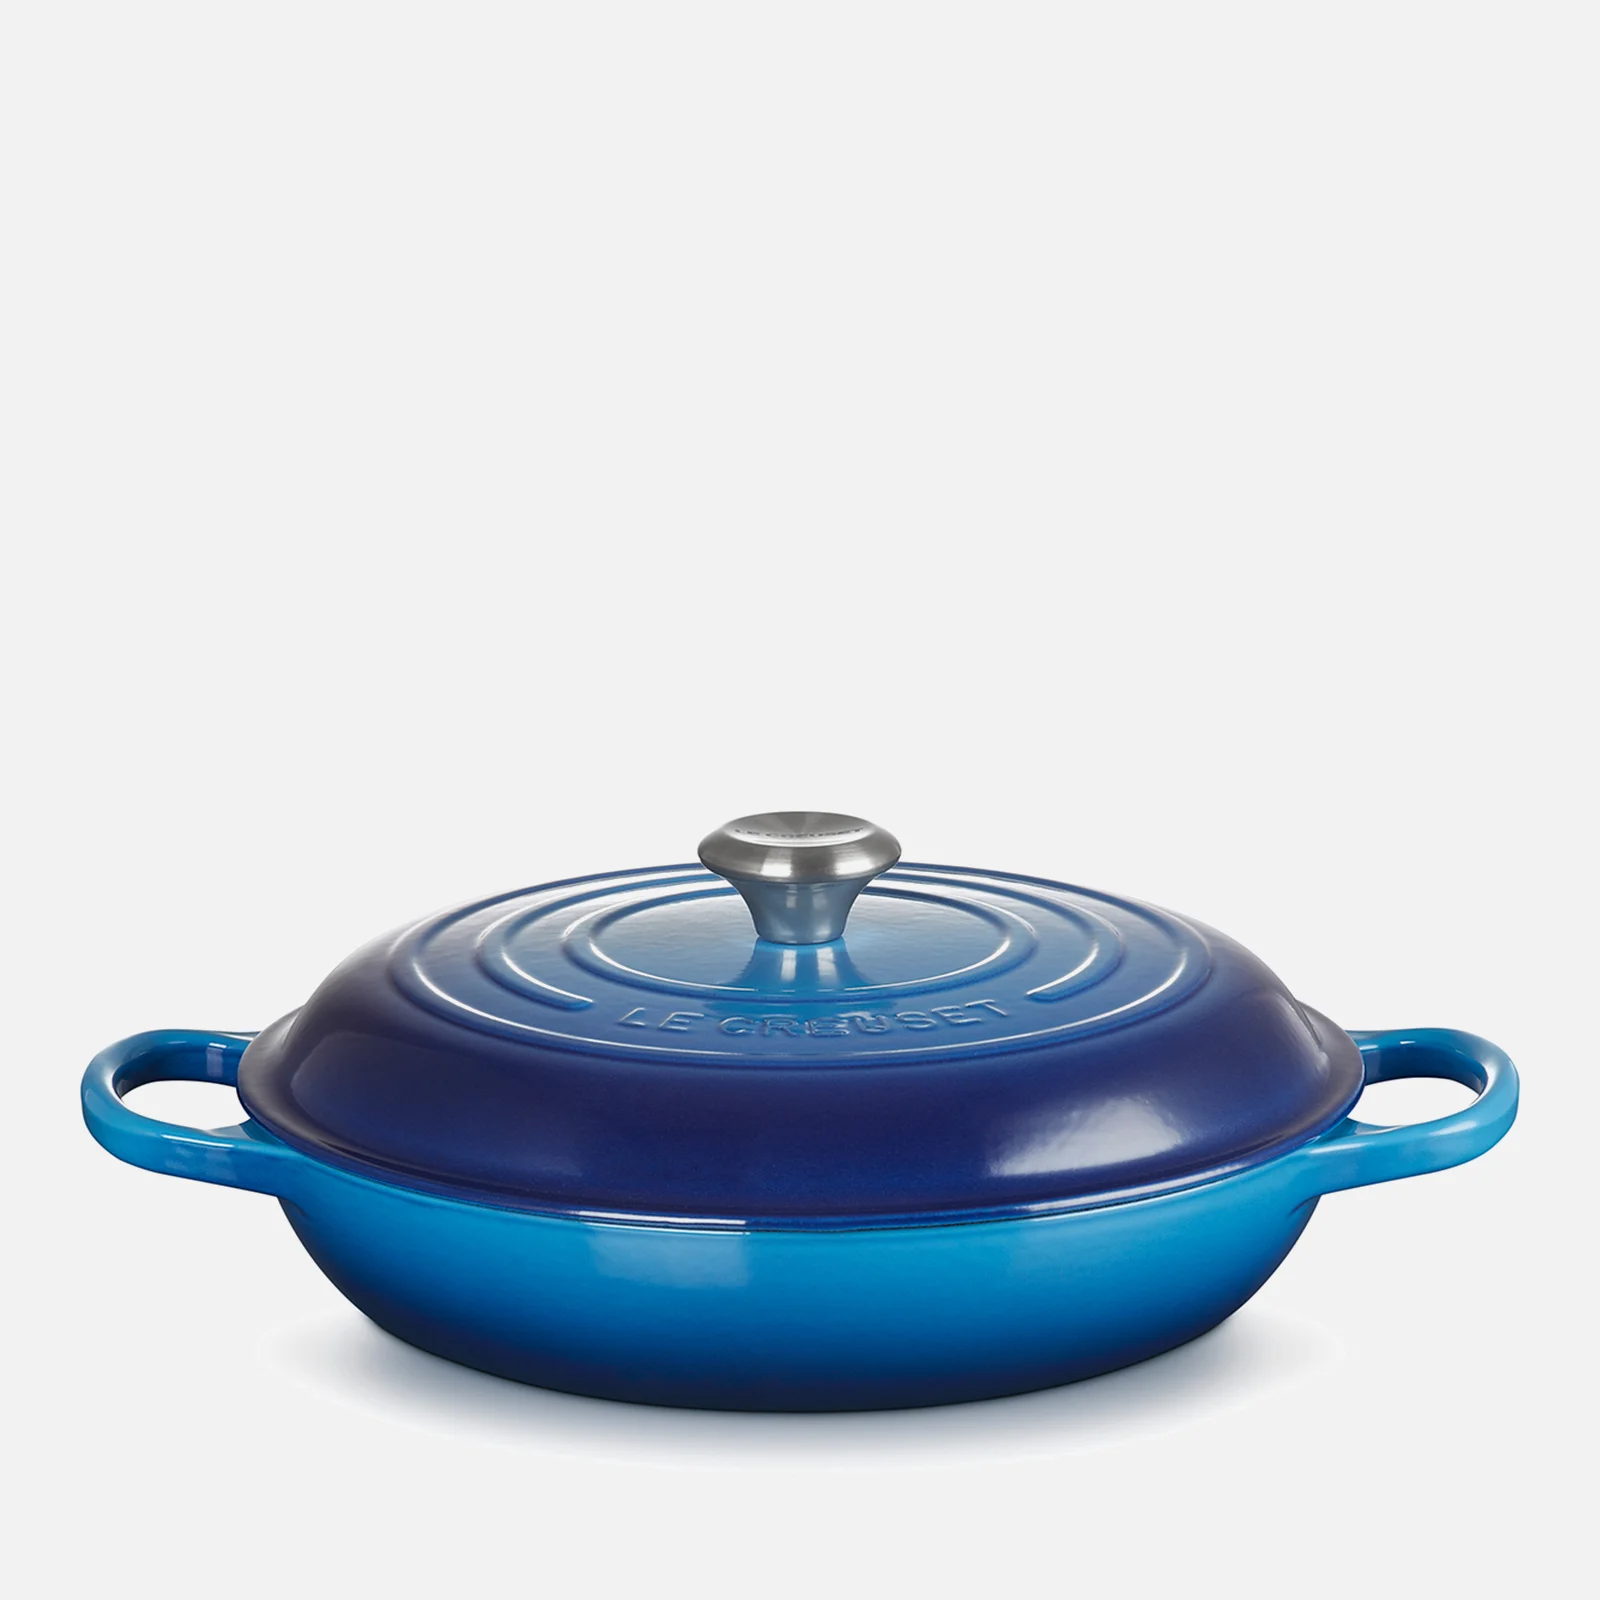 Le Creuset Signature Cast Iron Shallow Casserole Dish - 30cm - Azure Blue Image 1